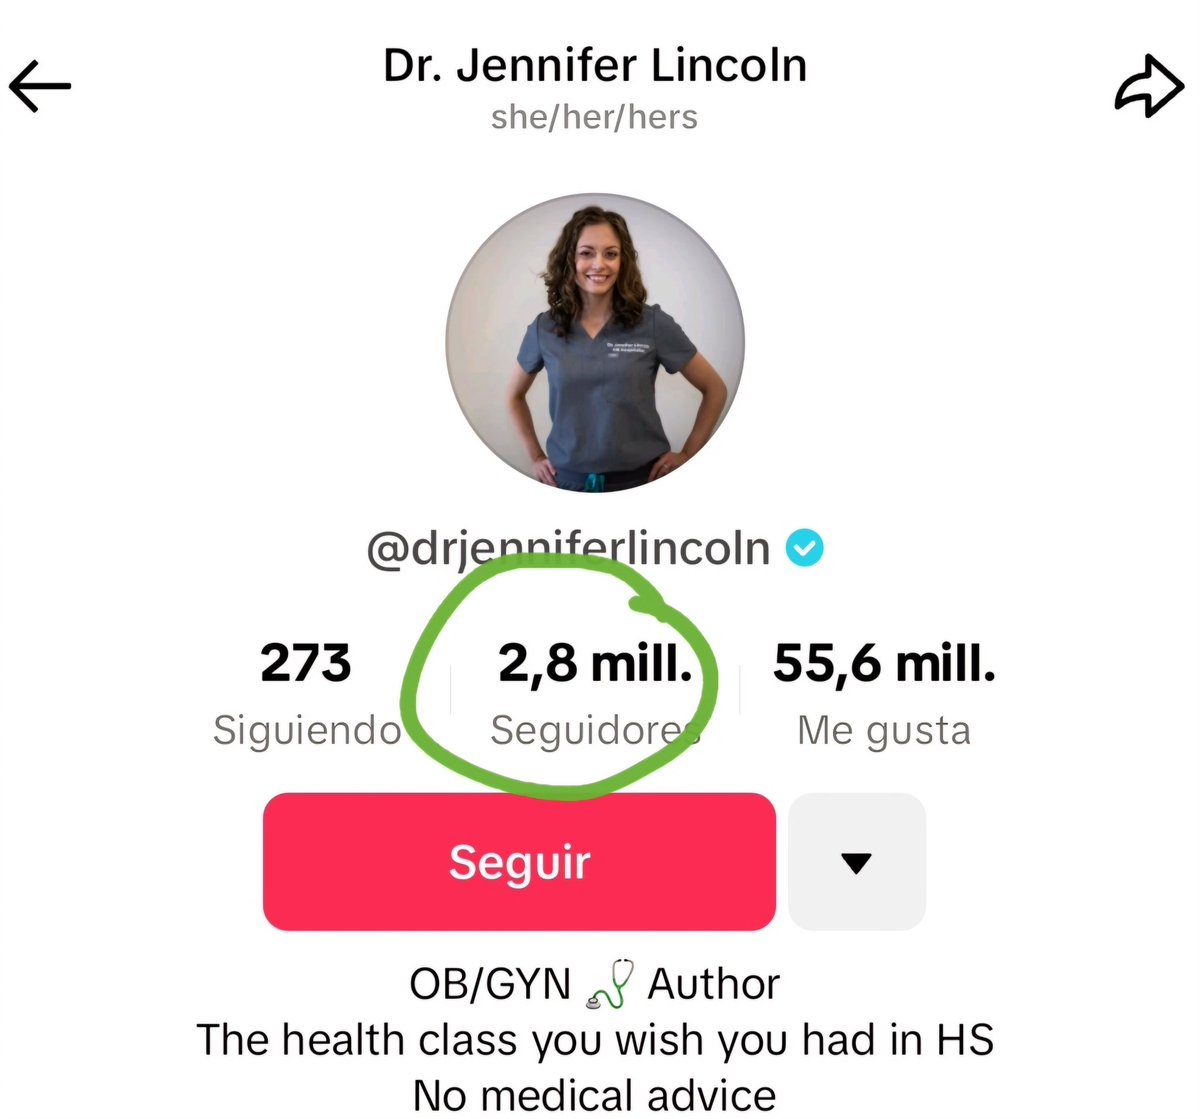 'Está totalmente bien [que la mayoría de los #Médicos no esté en #TikTok], pero quiero q sepan q la plataforma existe y q pueden usarla para empezar la conversación. Es una excelente manera de conocer a las personas donde están y descubrir qué les preocupa', Dra. Jennifer Lincoln